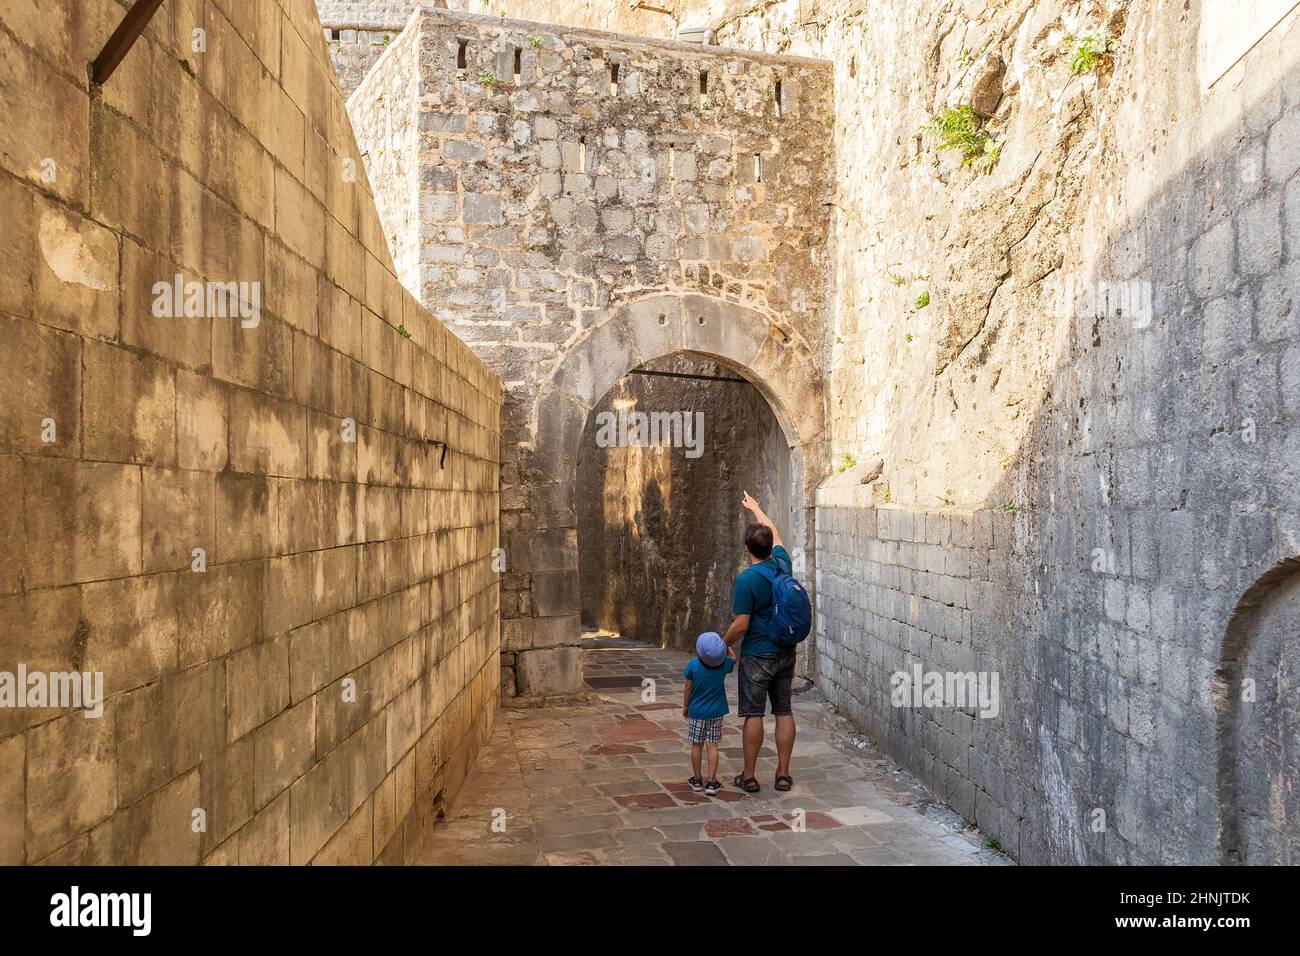 Vater und Sohn gehen durch mittelalterliche Festungsmauern in Kotor, Montenegro. Touristen, die auf einem Summ die enge gepflasterter Steinstraße in der Altstadt erkunden Stockfoto